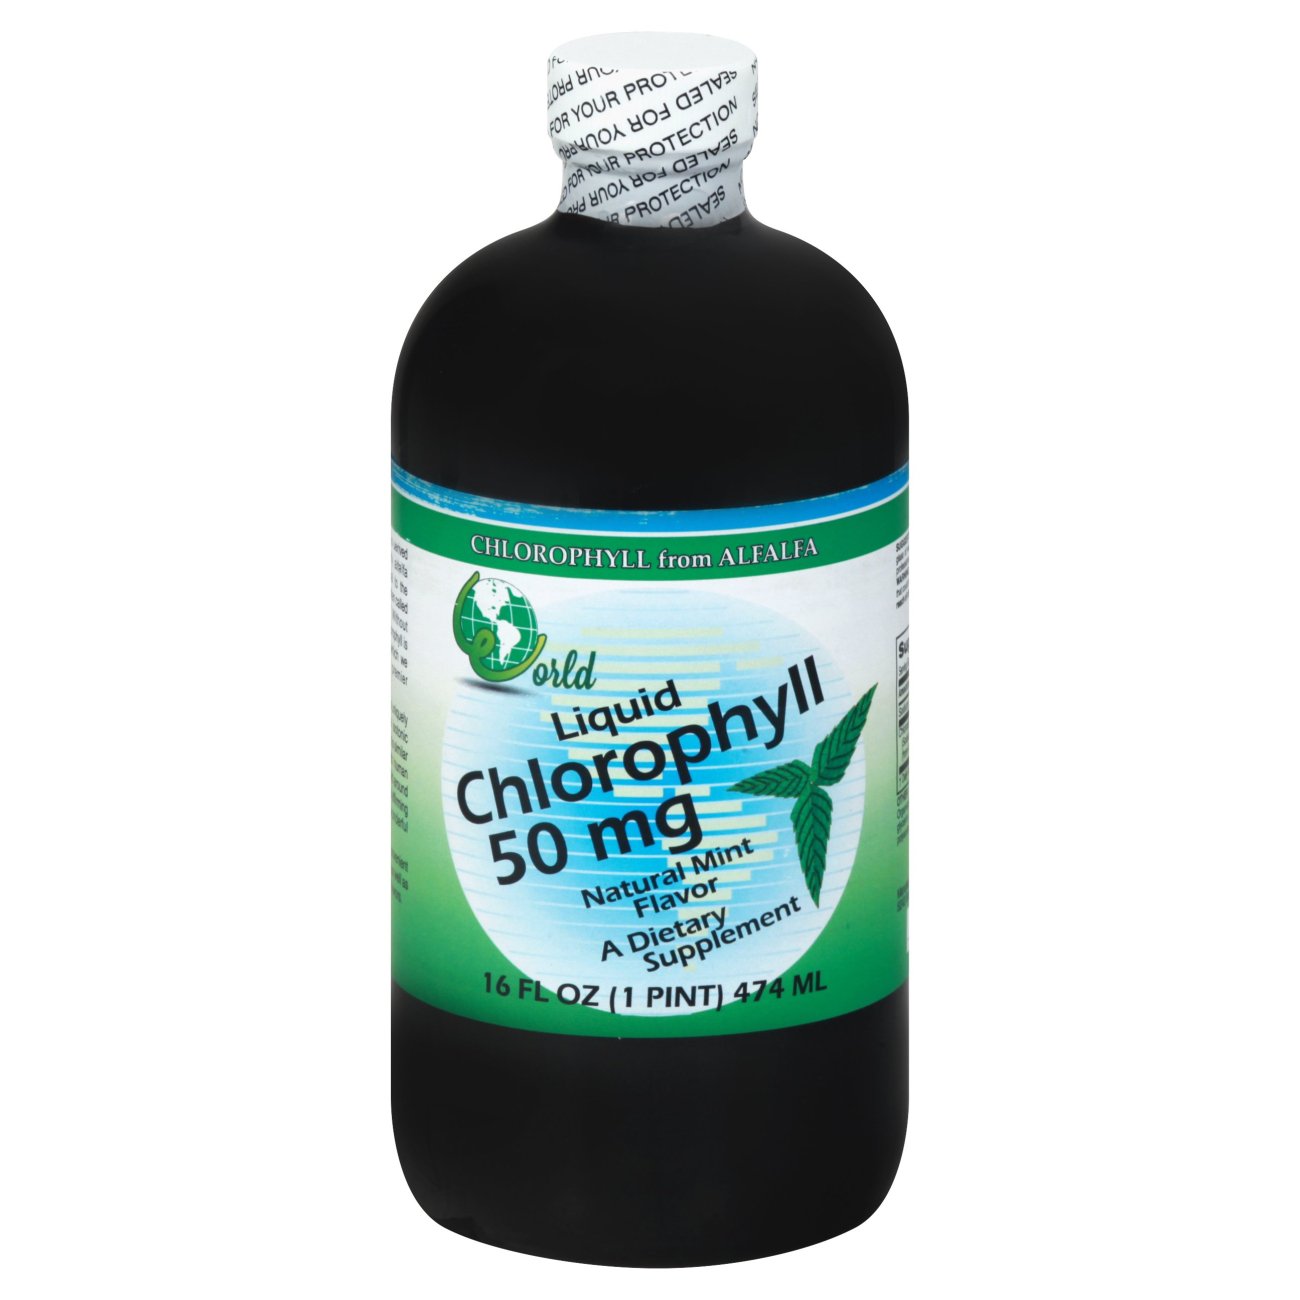 World Organic Chlorophyll, Liquid, 100 mg, with Spearmint and Glycerin - 16 fl oz